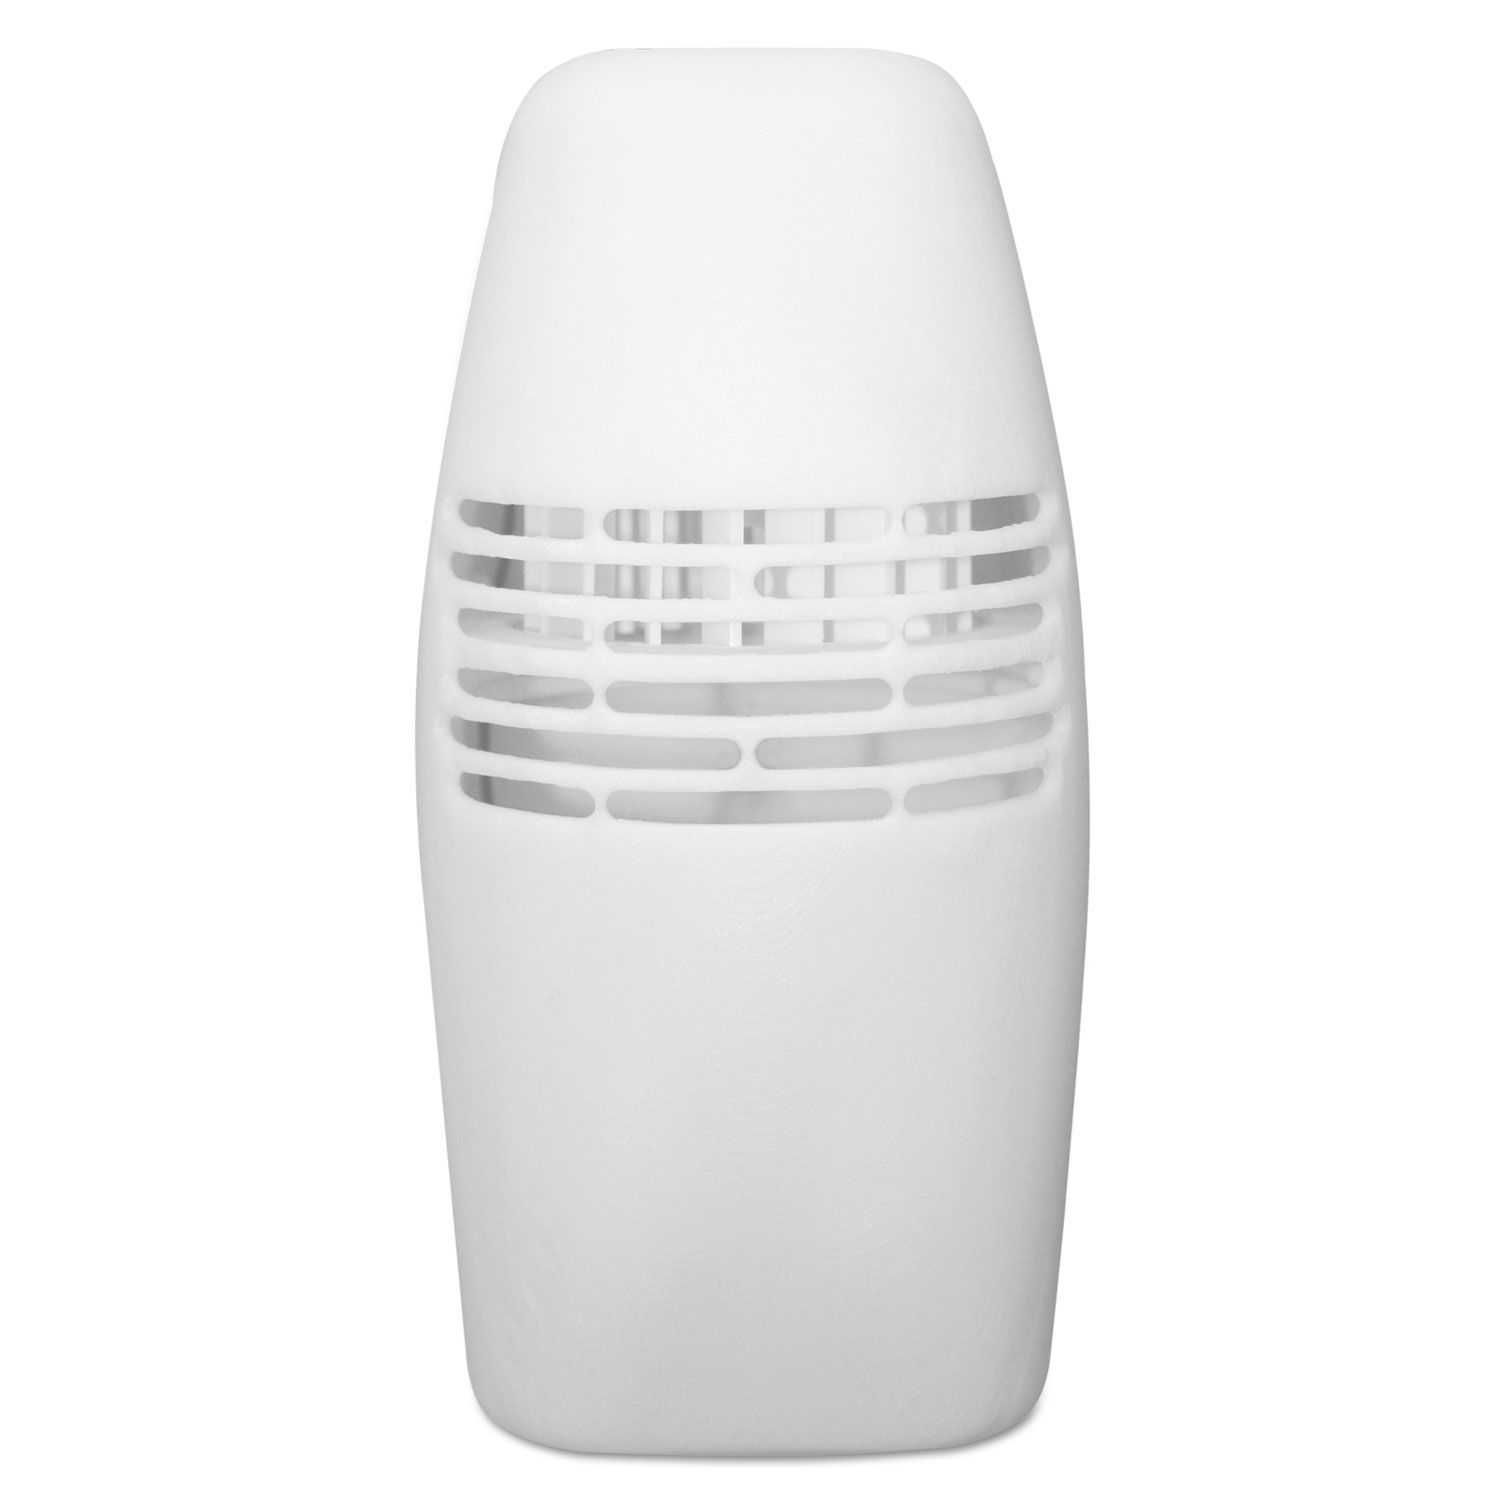 Locking Fan Fragrance Dispenser 3" x 4.5" x 3.63", White